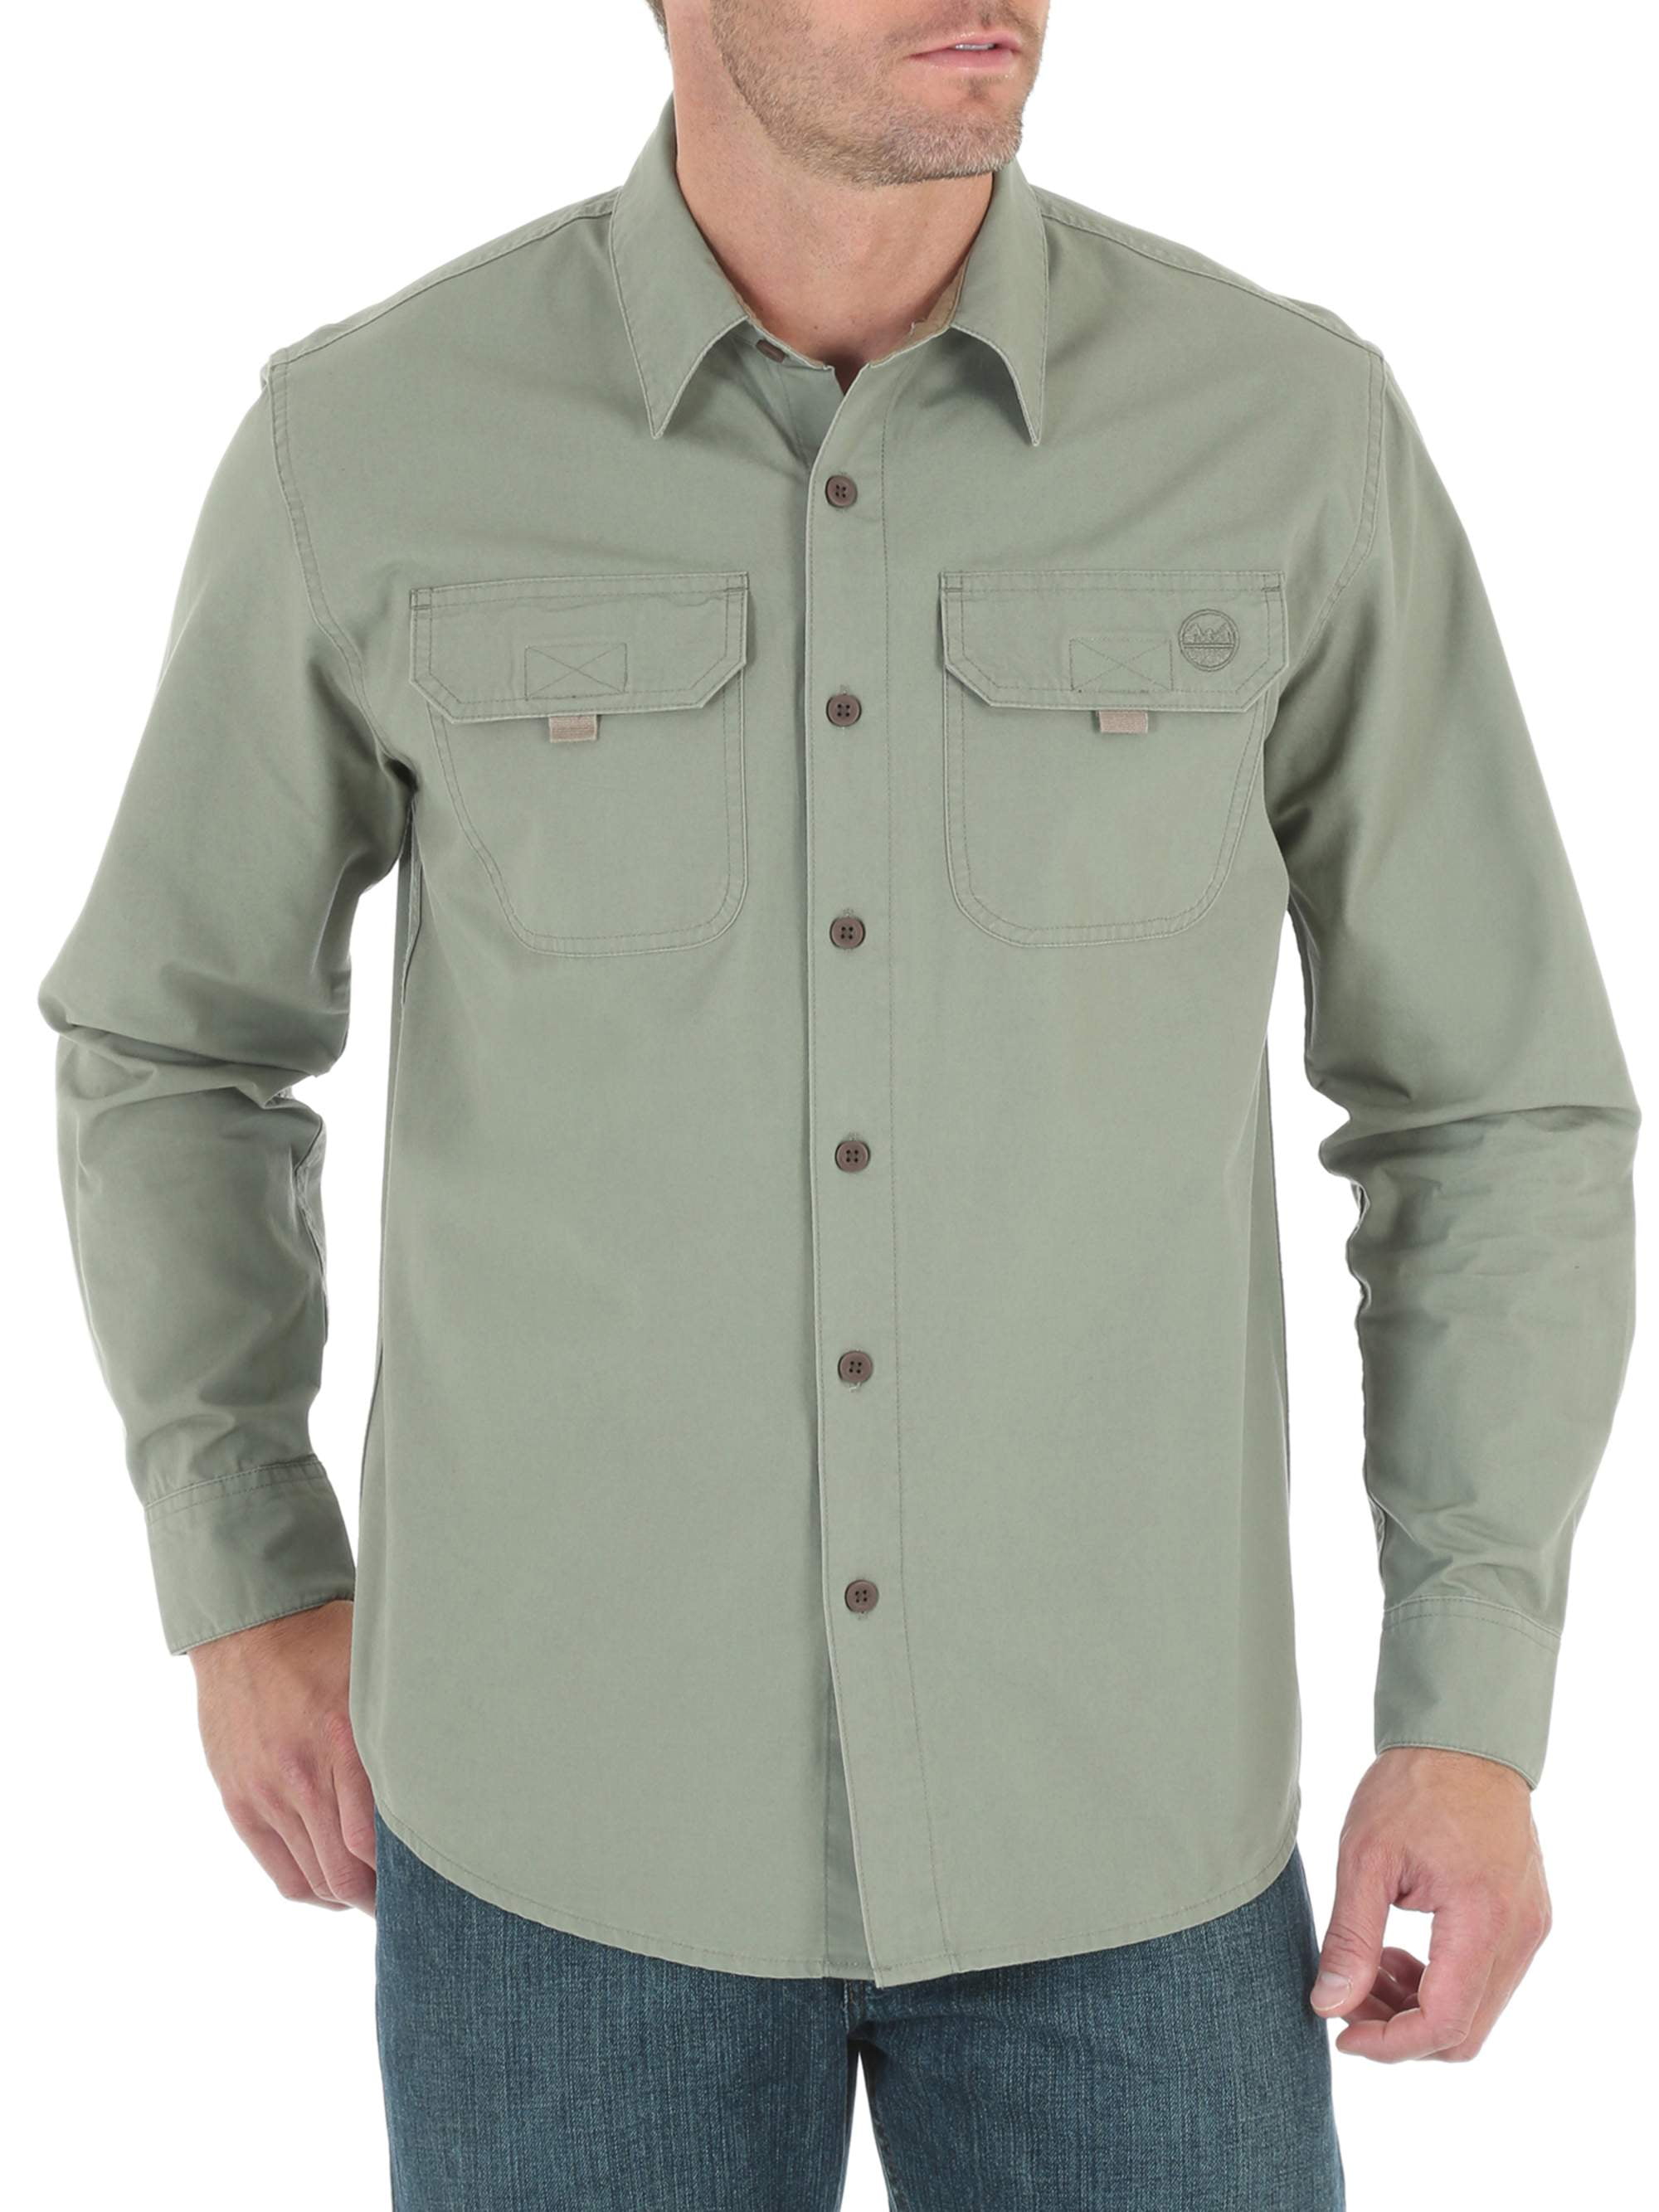 Men's Long Sleeve Woven Canvas Shirt - Walmart.com